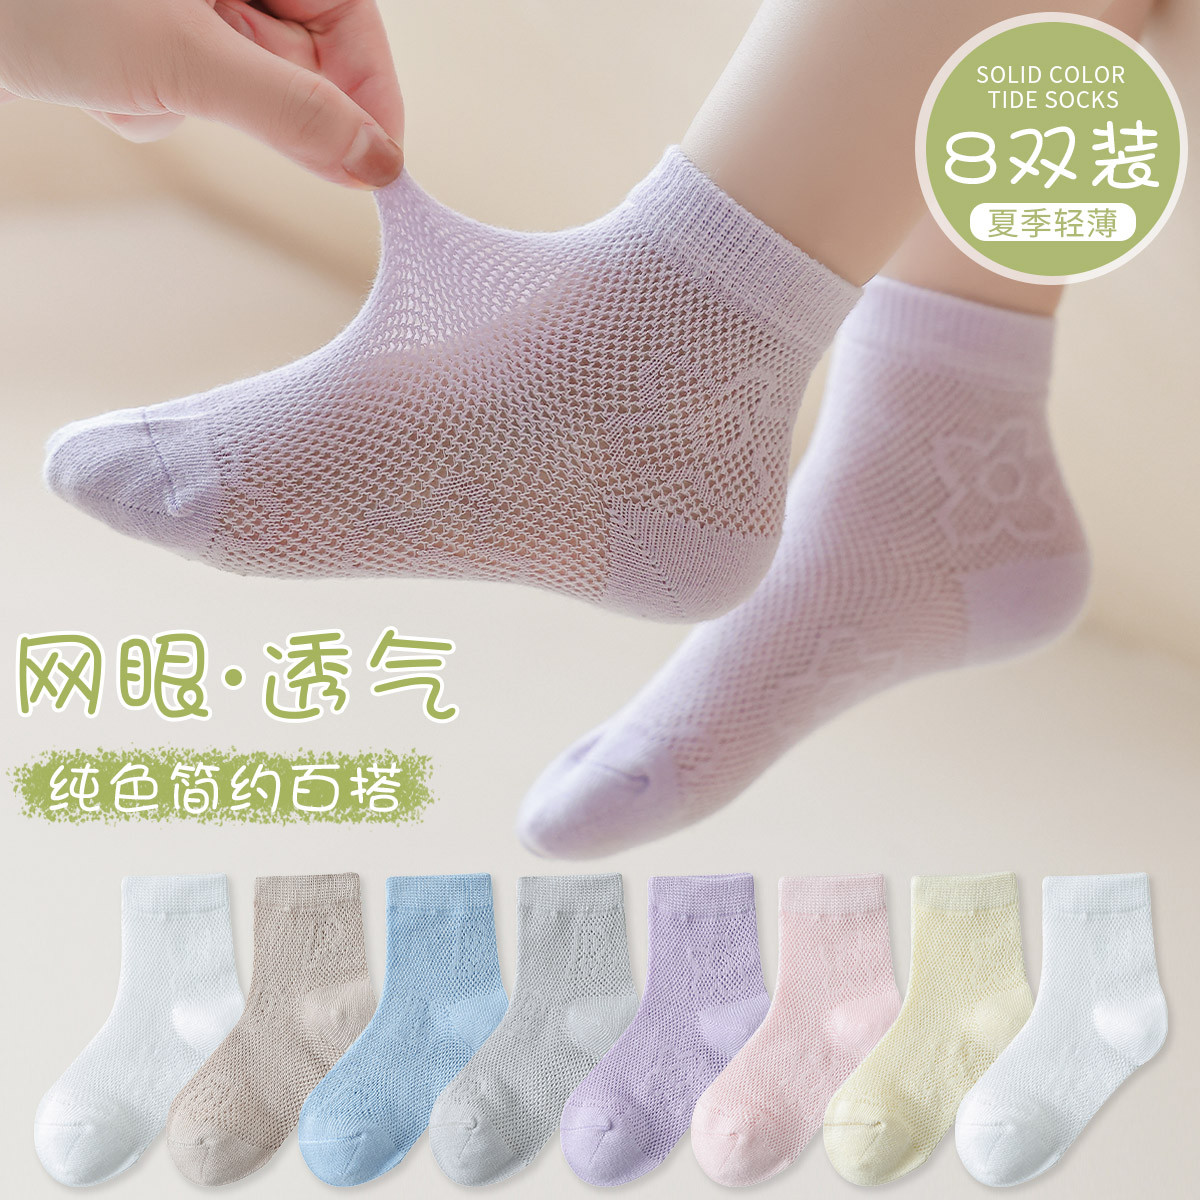 【超值8双装】夏季儿童袜子薄款网眼透气柔软男女童宝宝儿童袜子